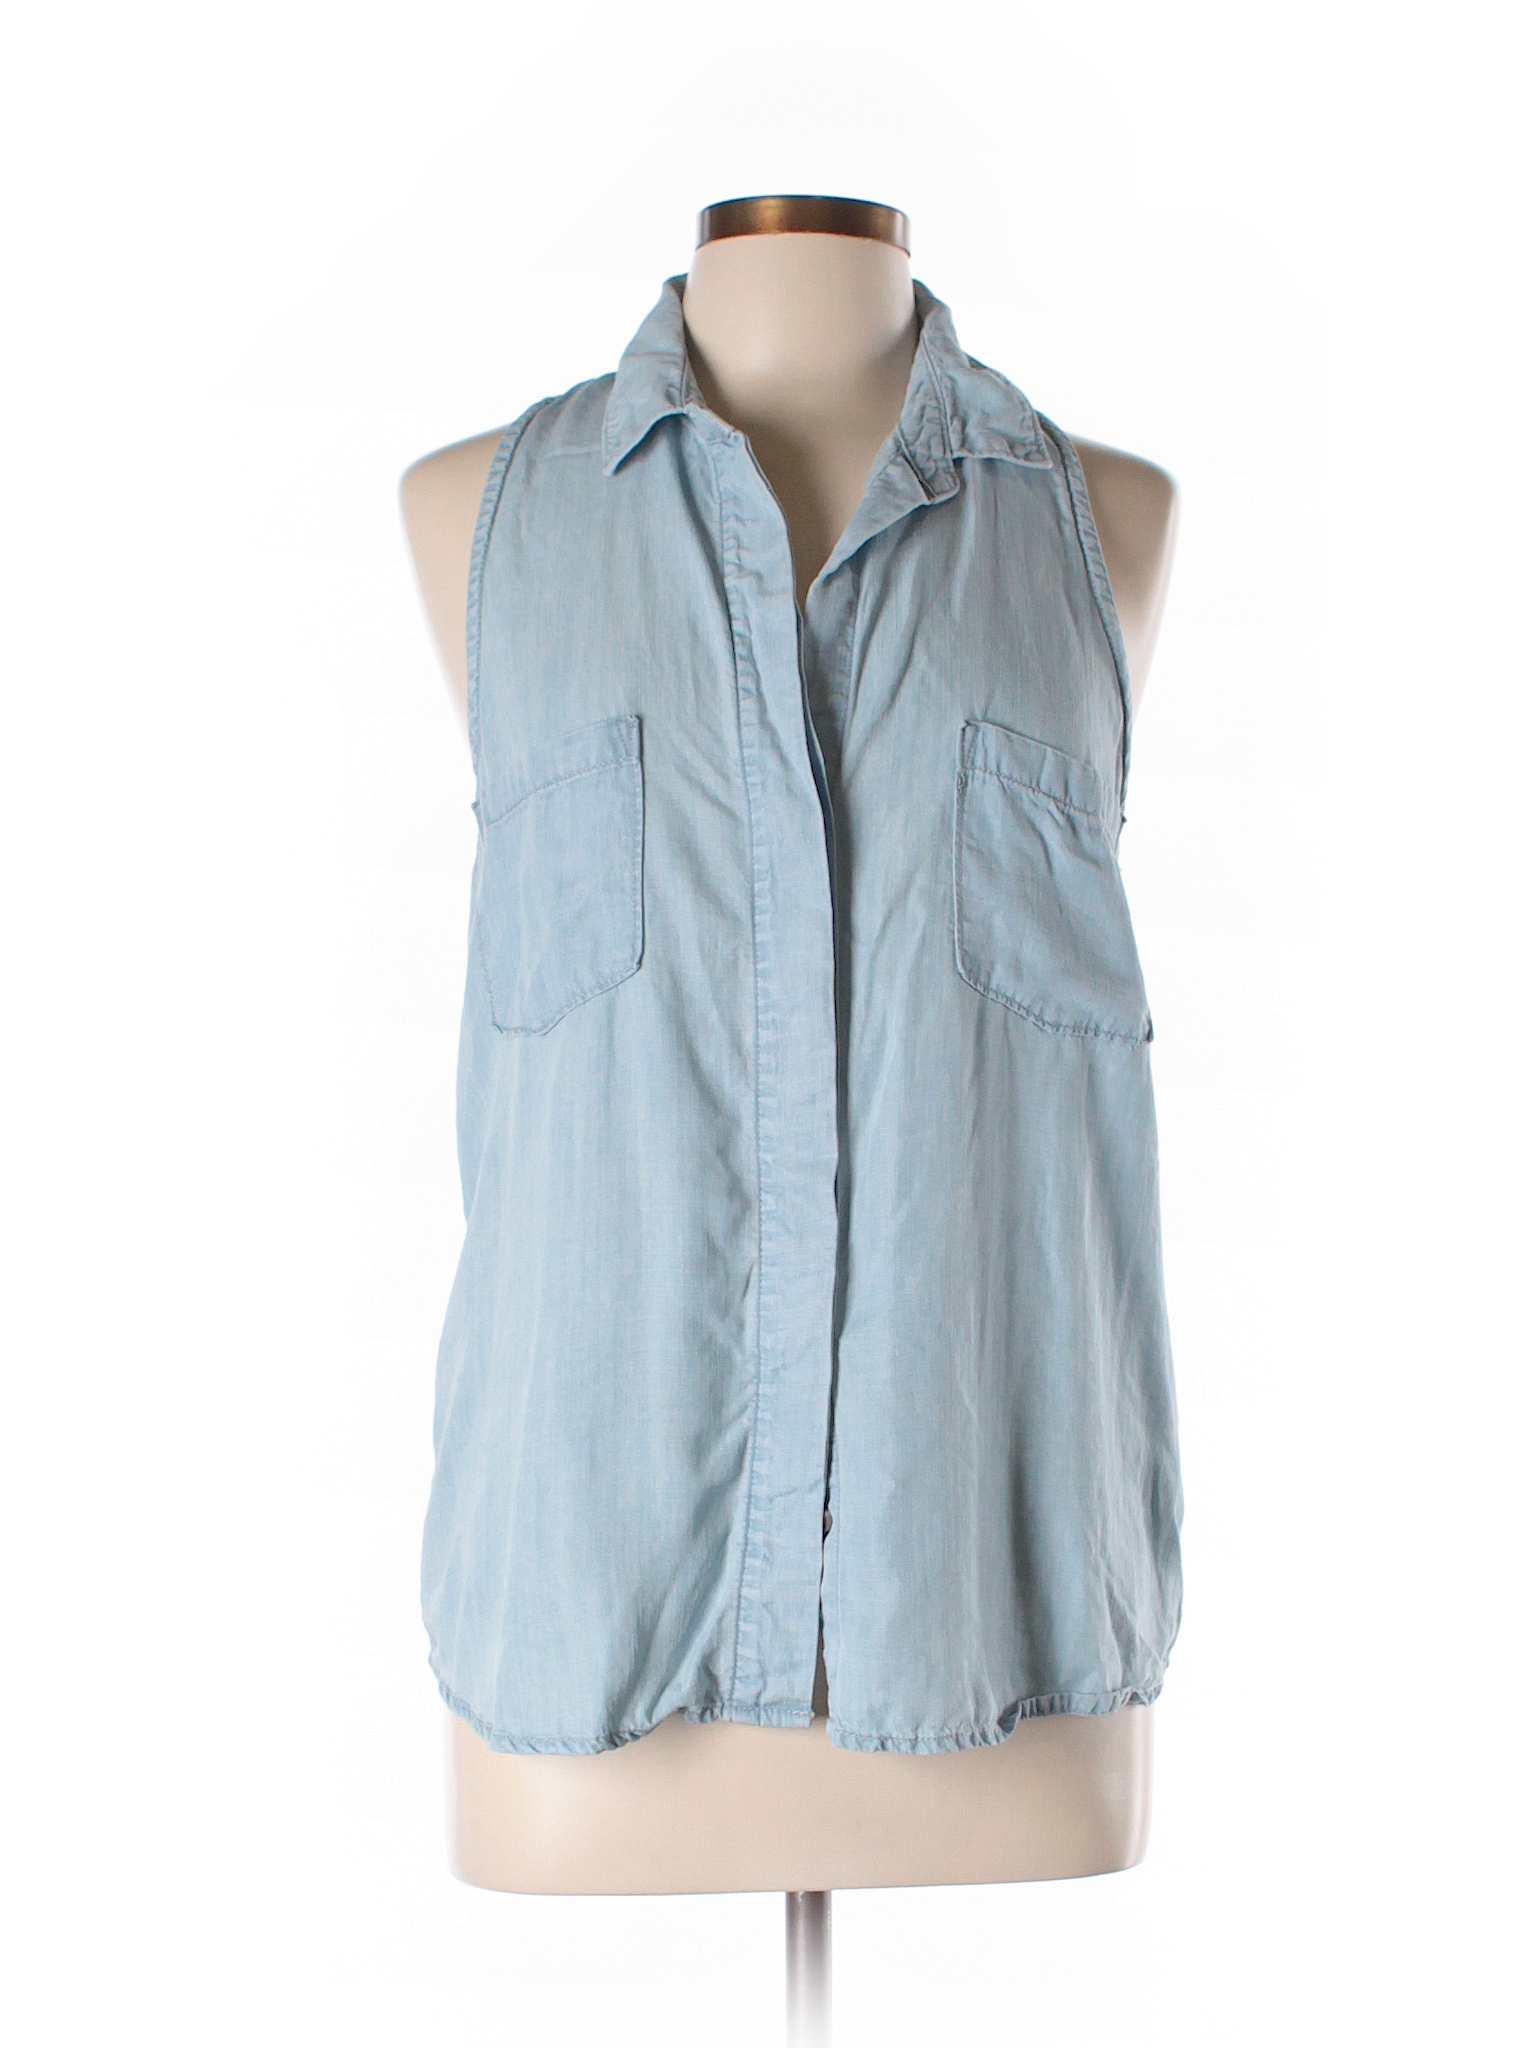 Bella Dahl 100% Tencel Chambray Light Blue Sleeveless Button-Down Shirt ...